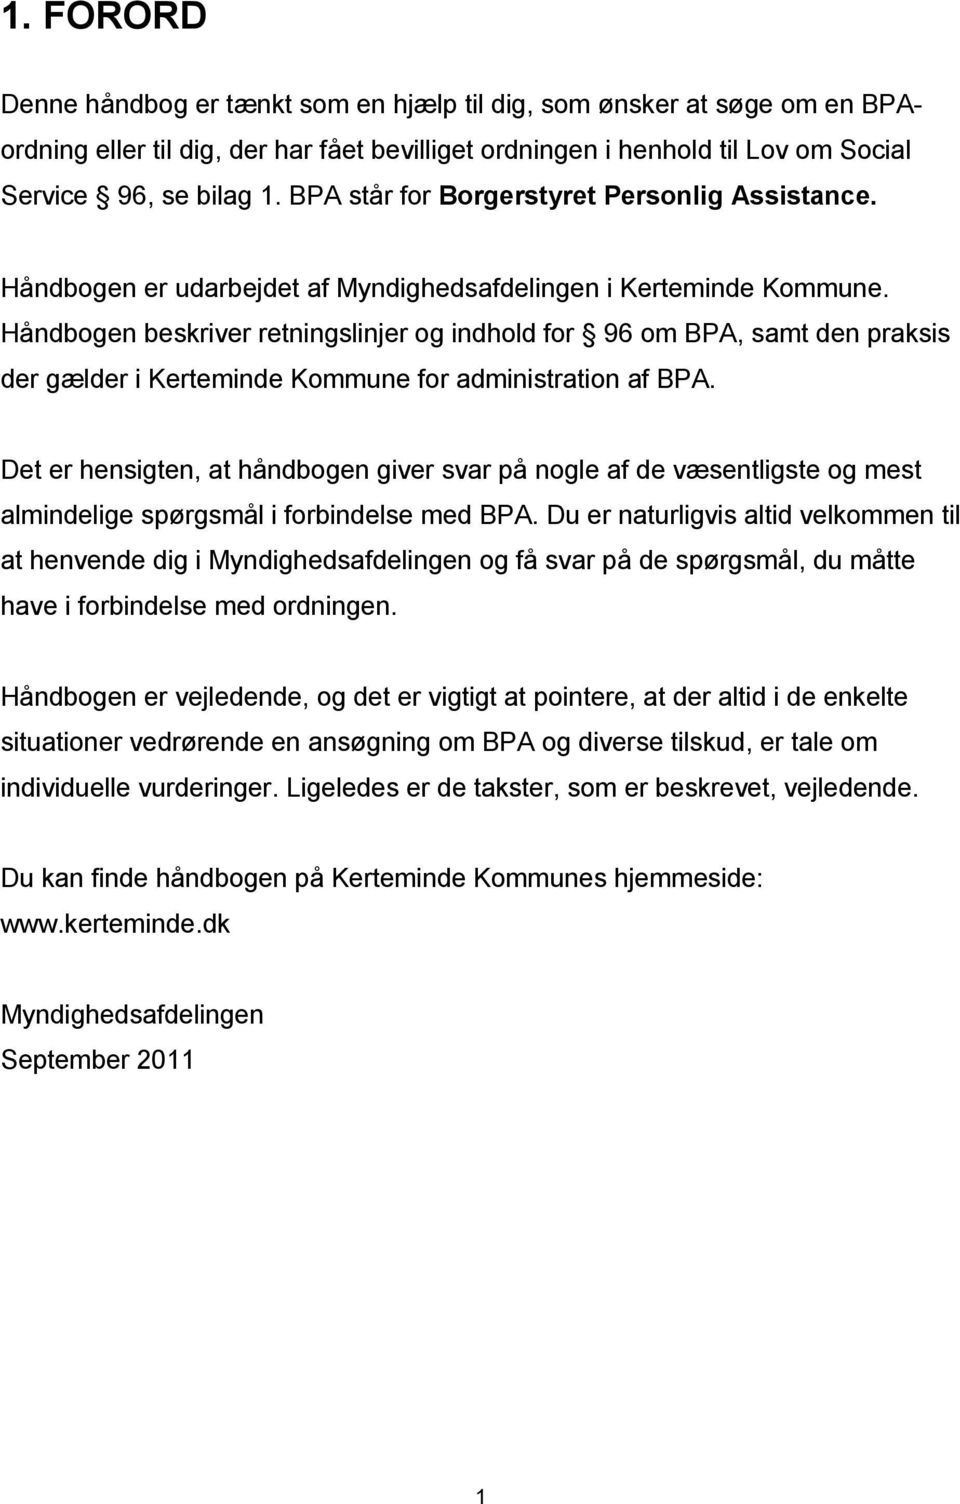 Håndbogen beskriver retningslinjer og indhold for 96 om BPA, samt den praksis der gælder i Kerteminde Kommune for administration af BPA.